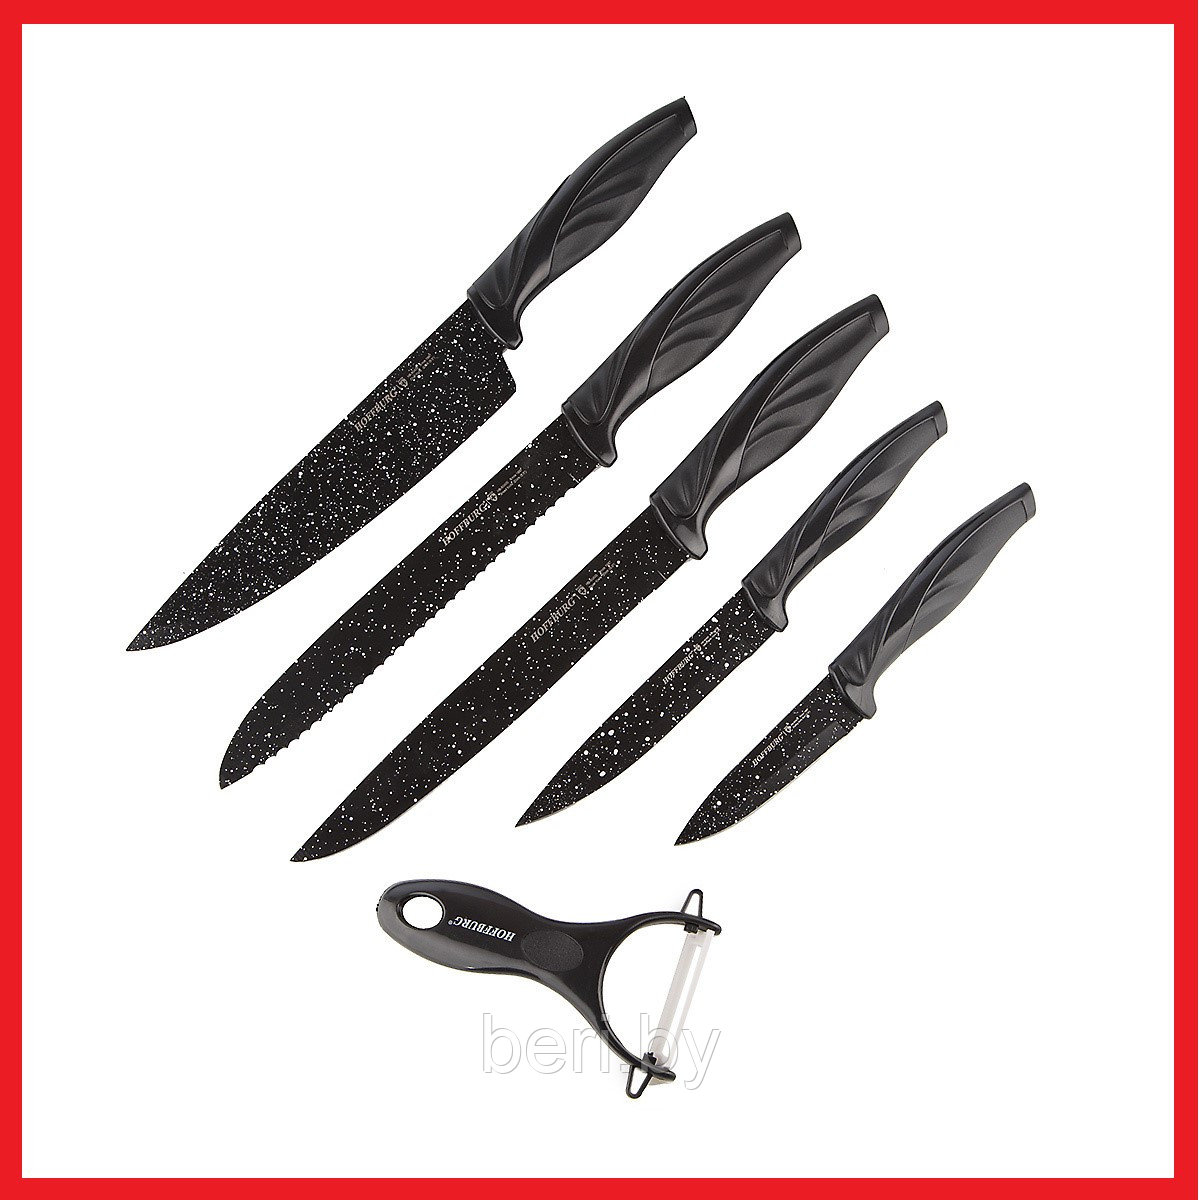 HB-60430 Набор ножей Hoffburg, 6 предметов, овощечистка, нержавеющая сталь